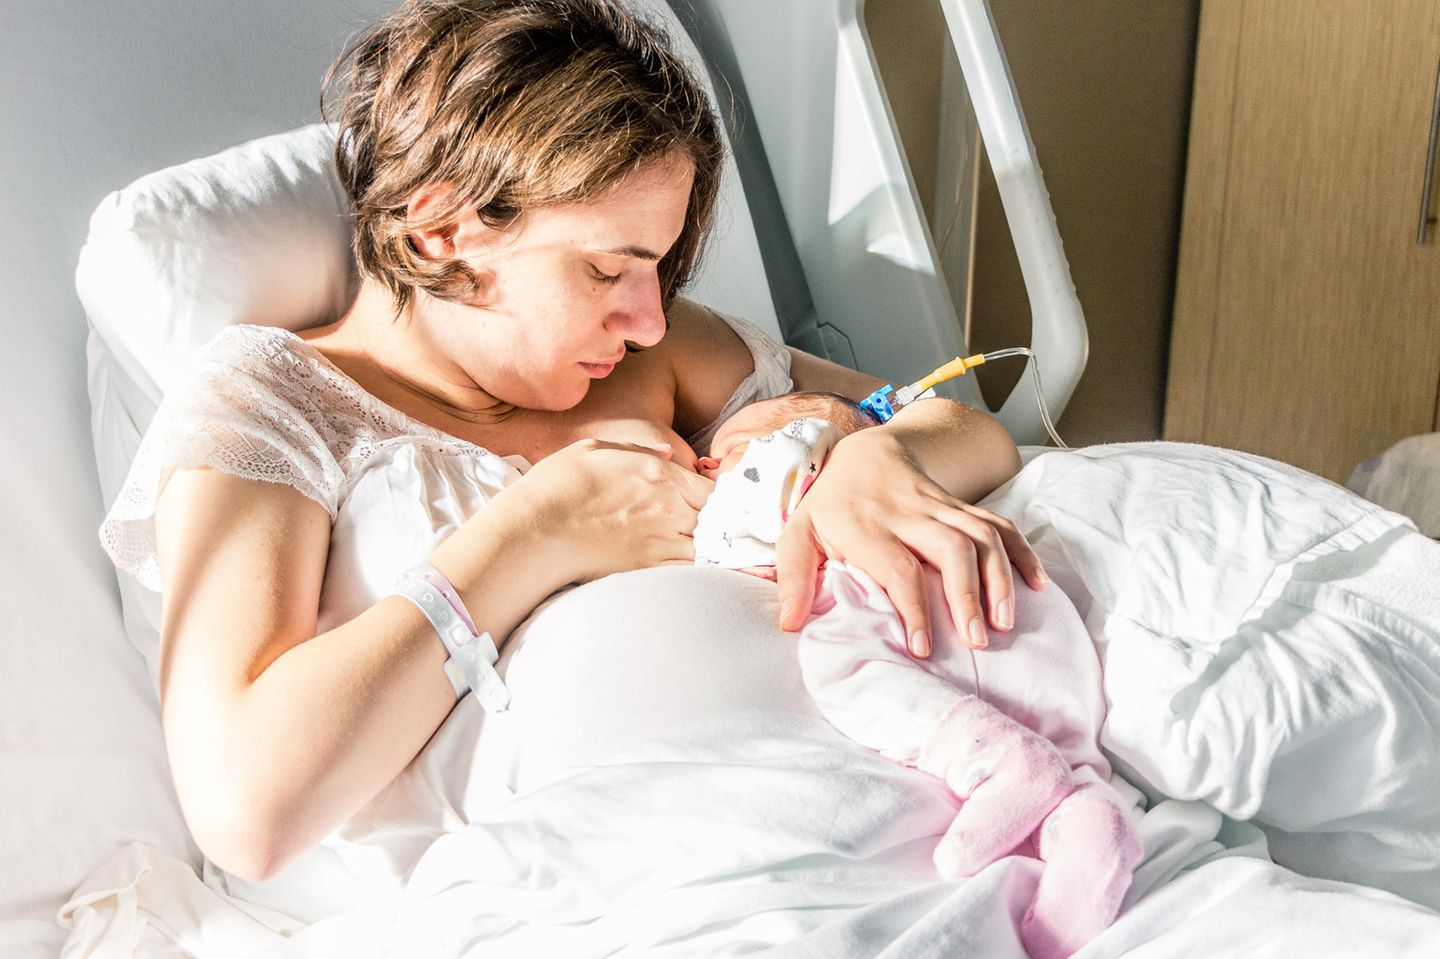 Stillen: Mutter stillt Baby im Krankenhaus